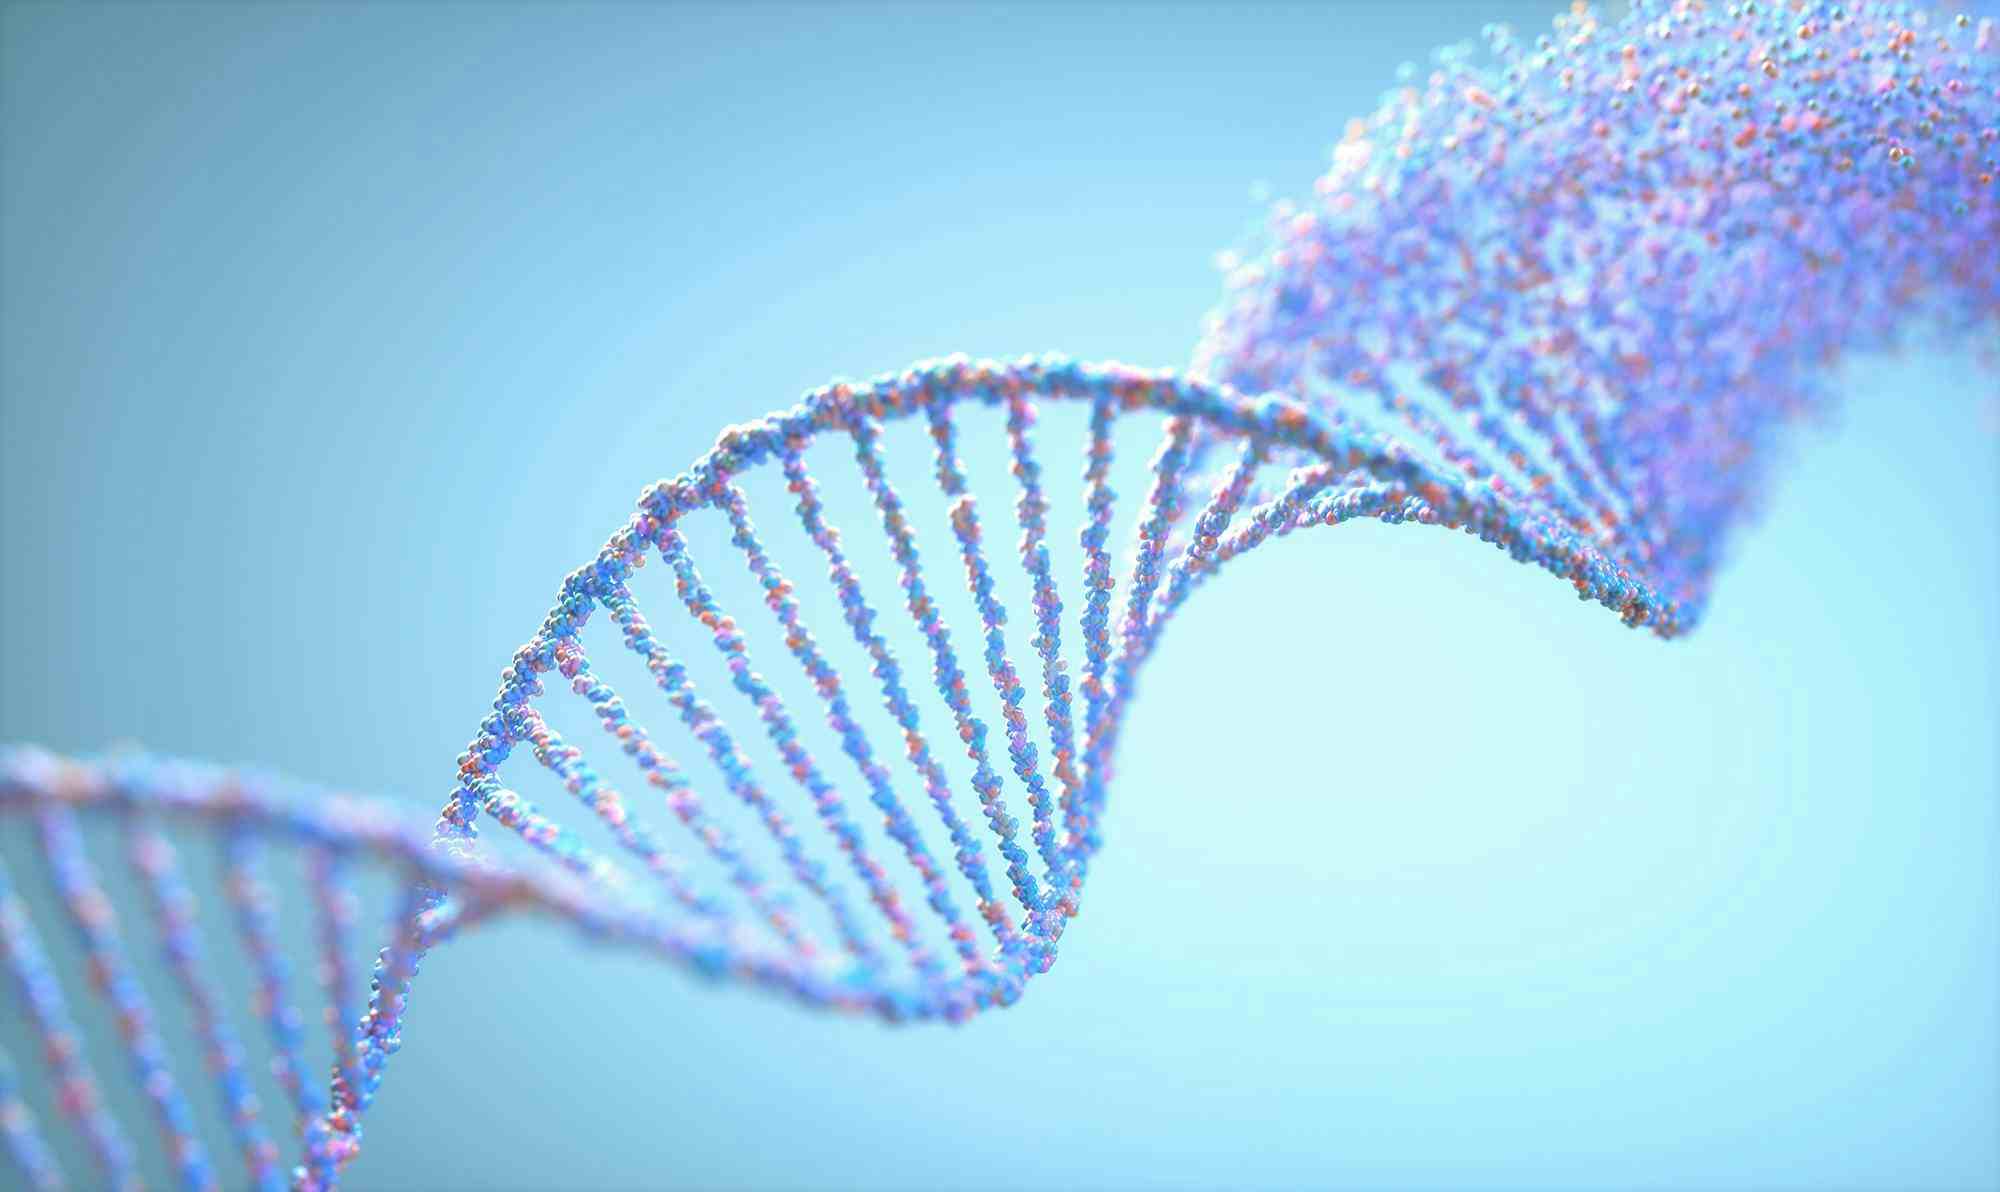 Digital image of DNA strand